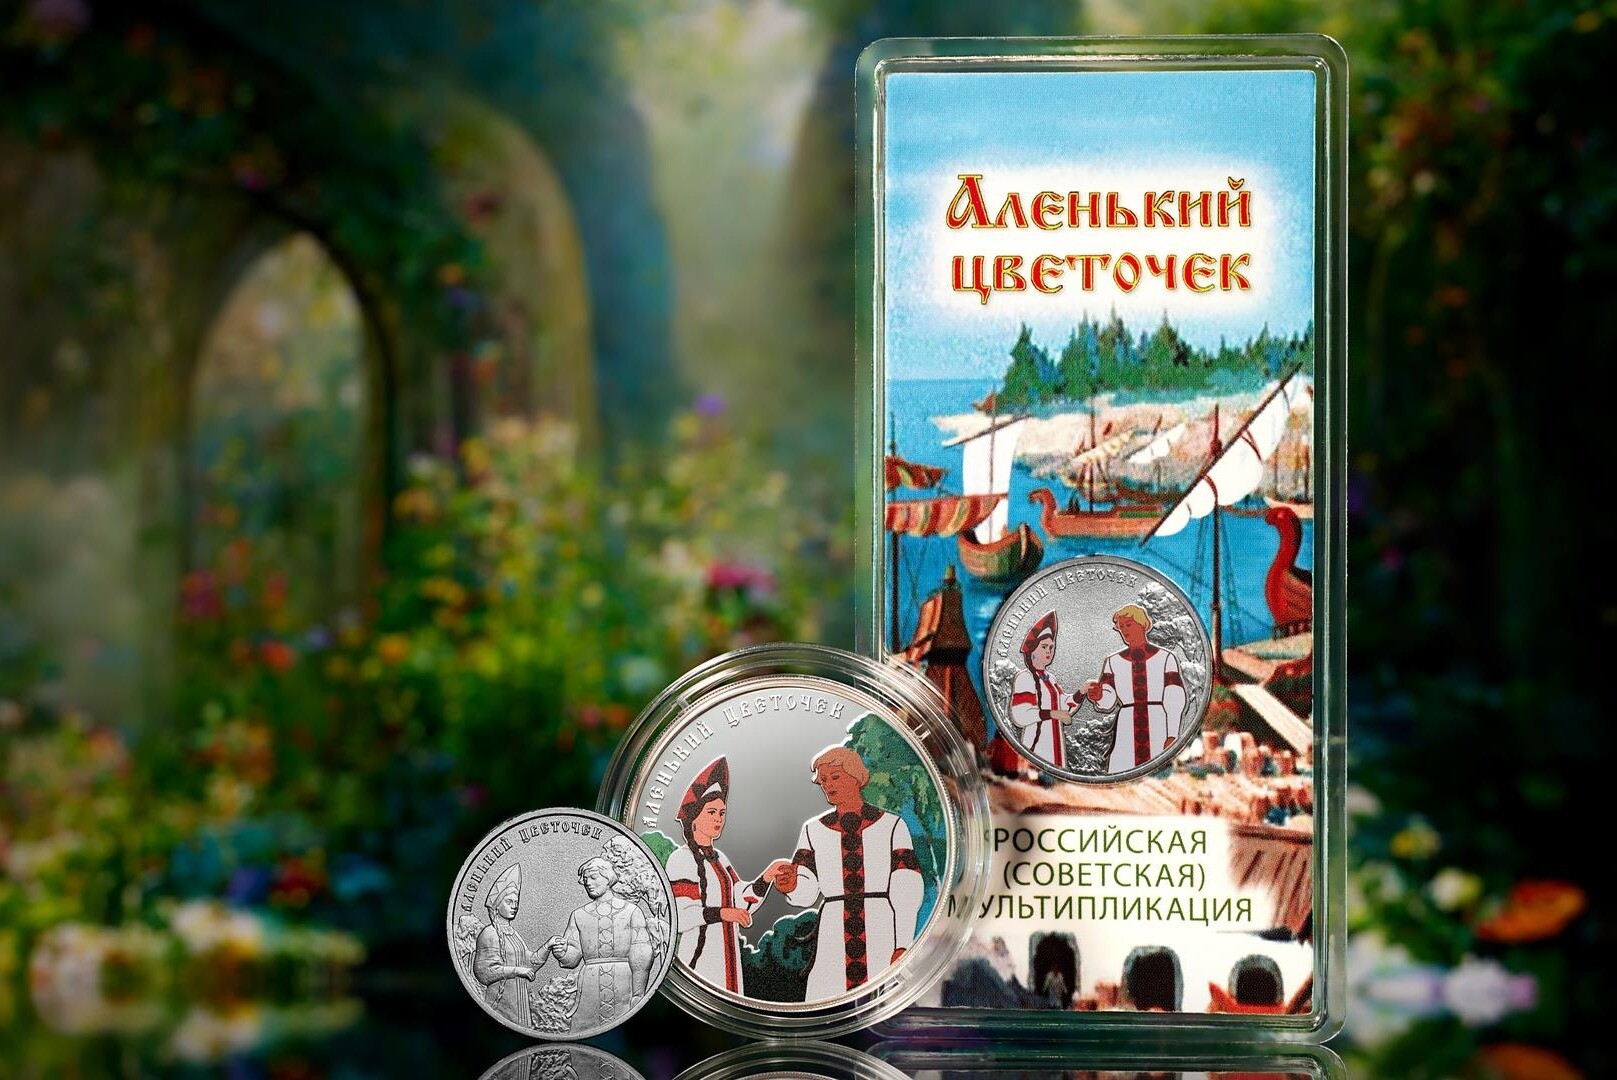 ЦБ РФ 20 октября выпускает памятные монеты, посвященные мультфильму "Аленький цветочек"